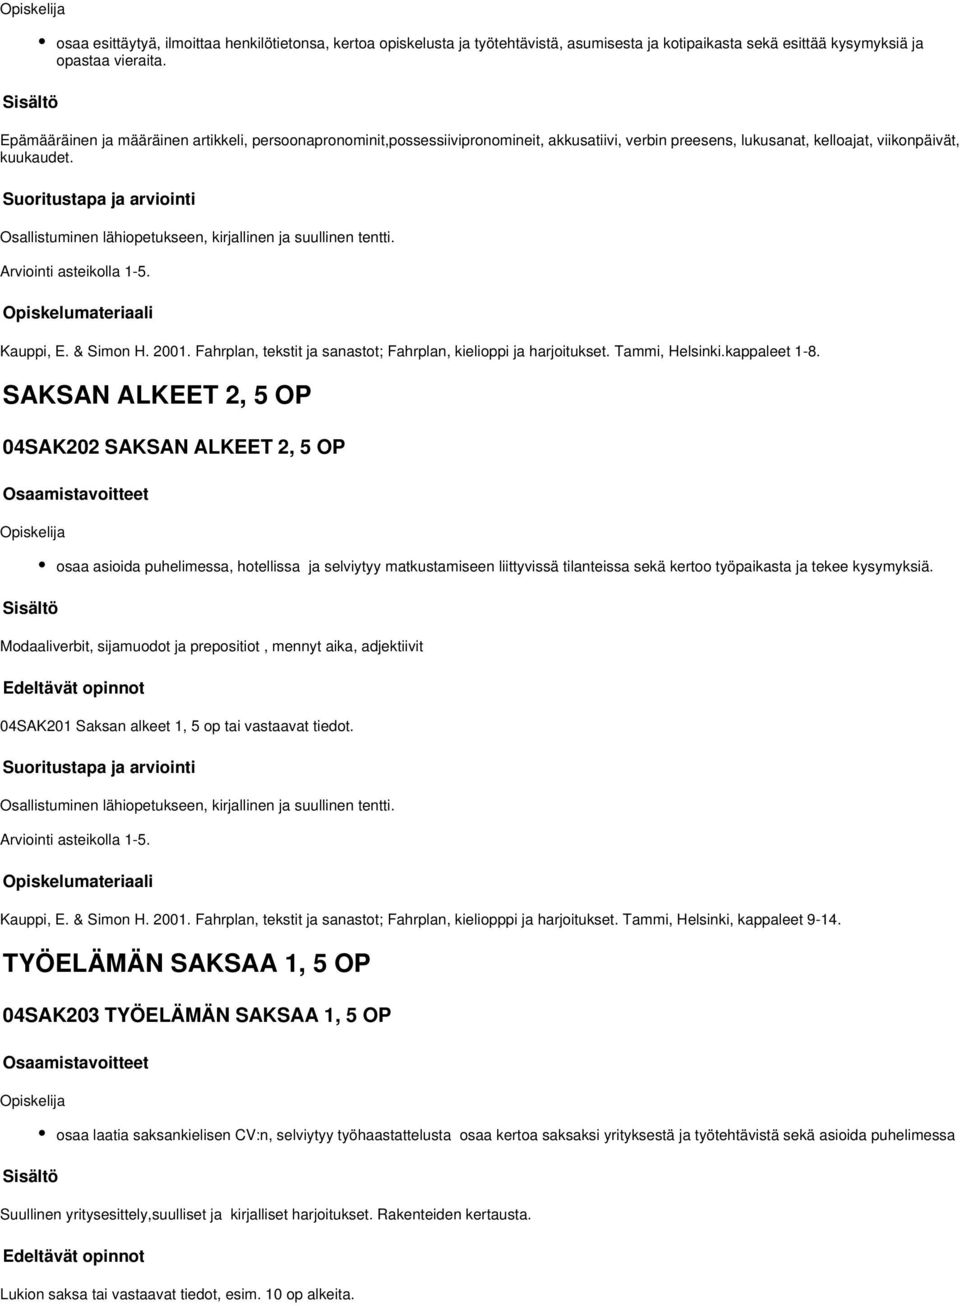 Osallistuminen lähiopetukseen, kirjallinen ja suullinen tentti. Kauppi, E. & Simon H. 2001. Fahrplan, tekstit ja sanastot; Fahrplan, kielioppi ja harjoitukset. Tammi, Helsinki.kappaleet 1-8.